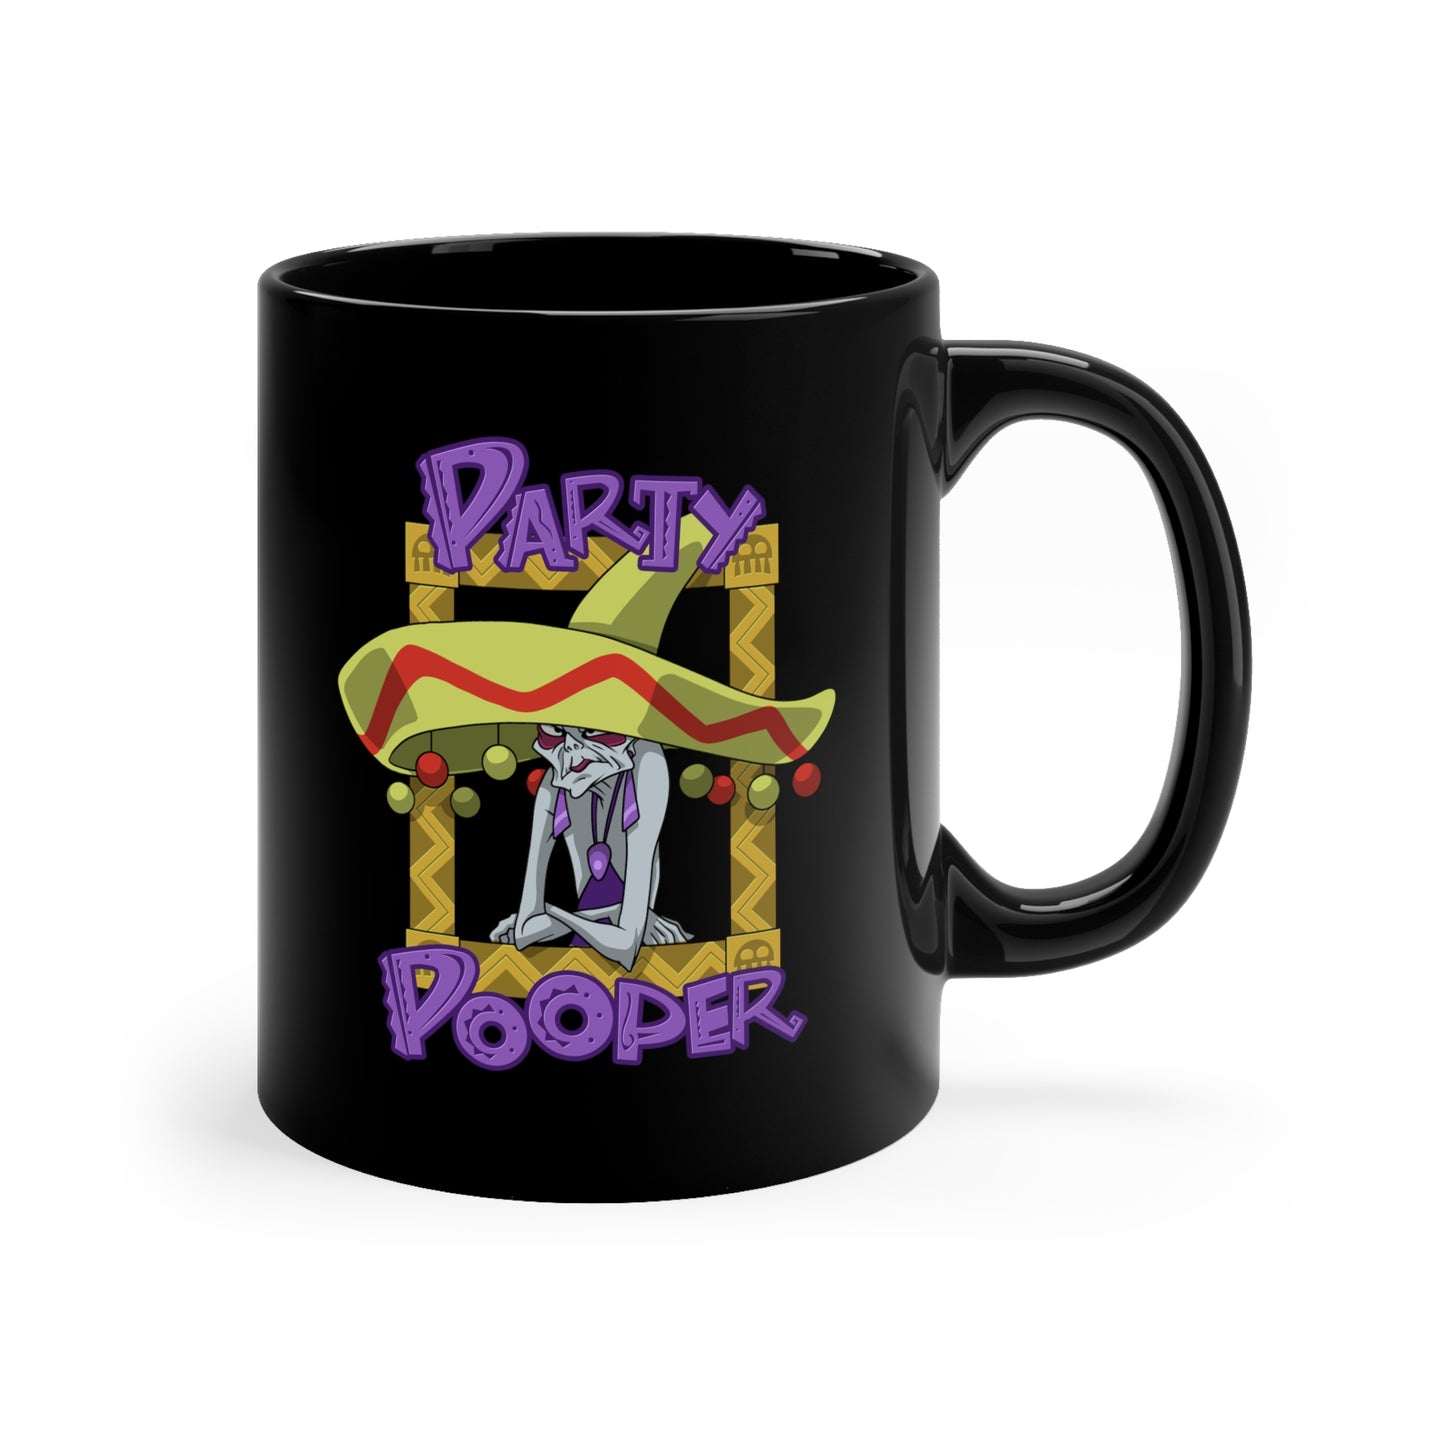 Party Pooper ceramic mug